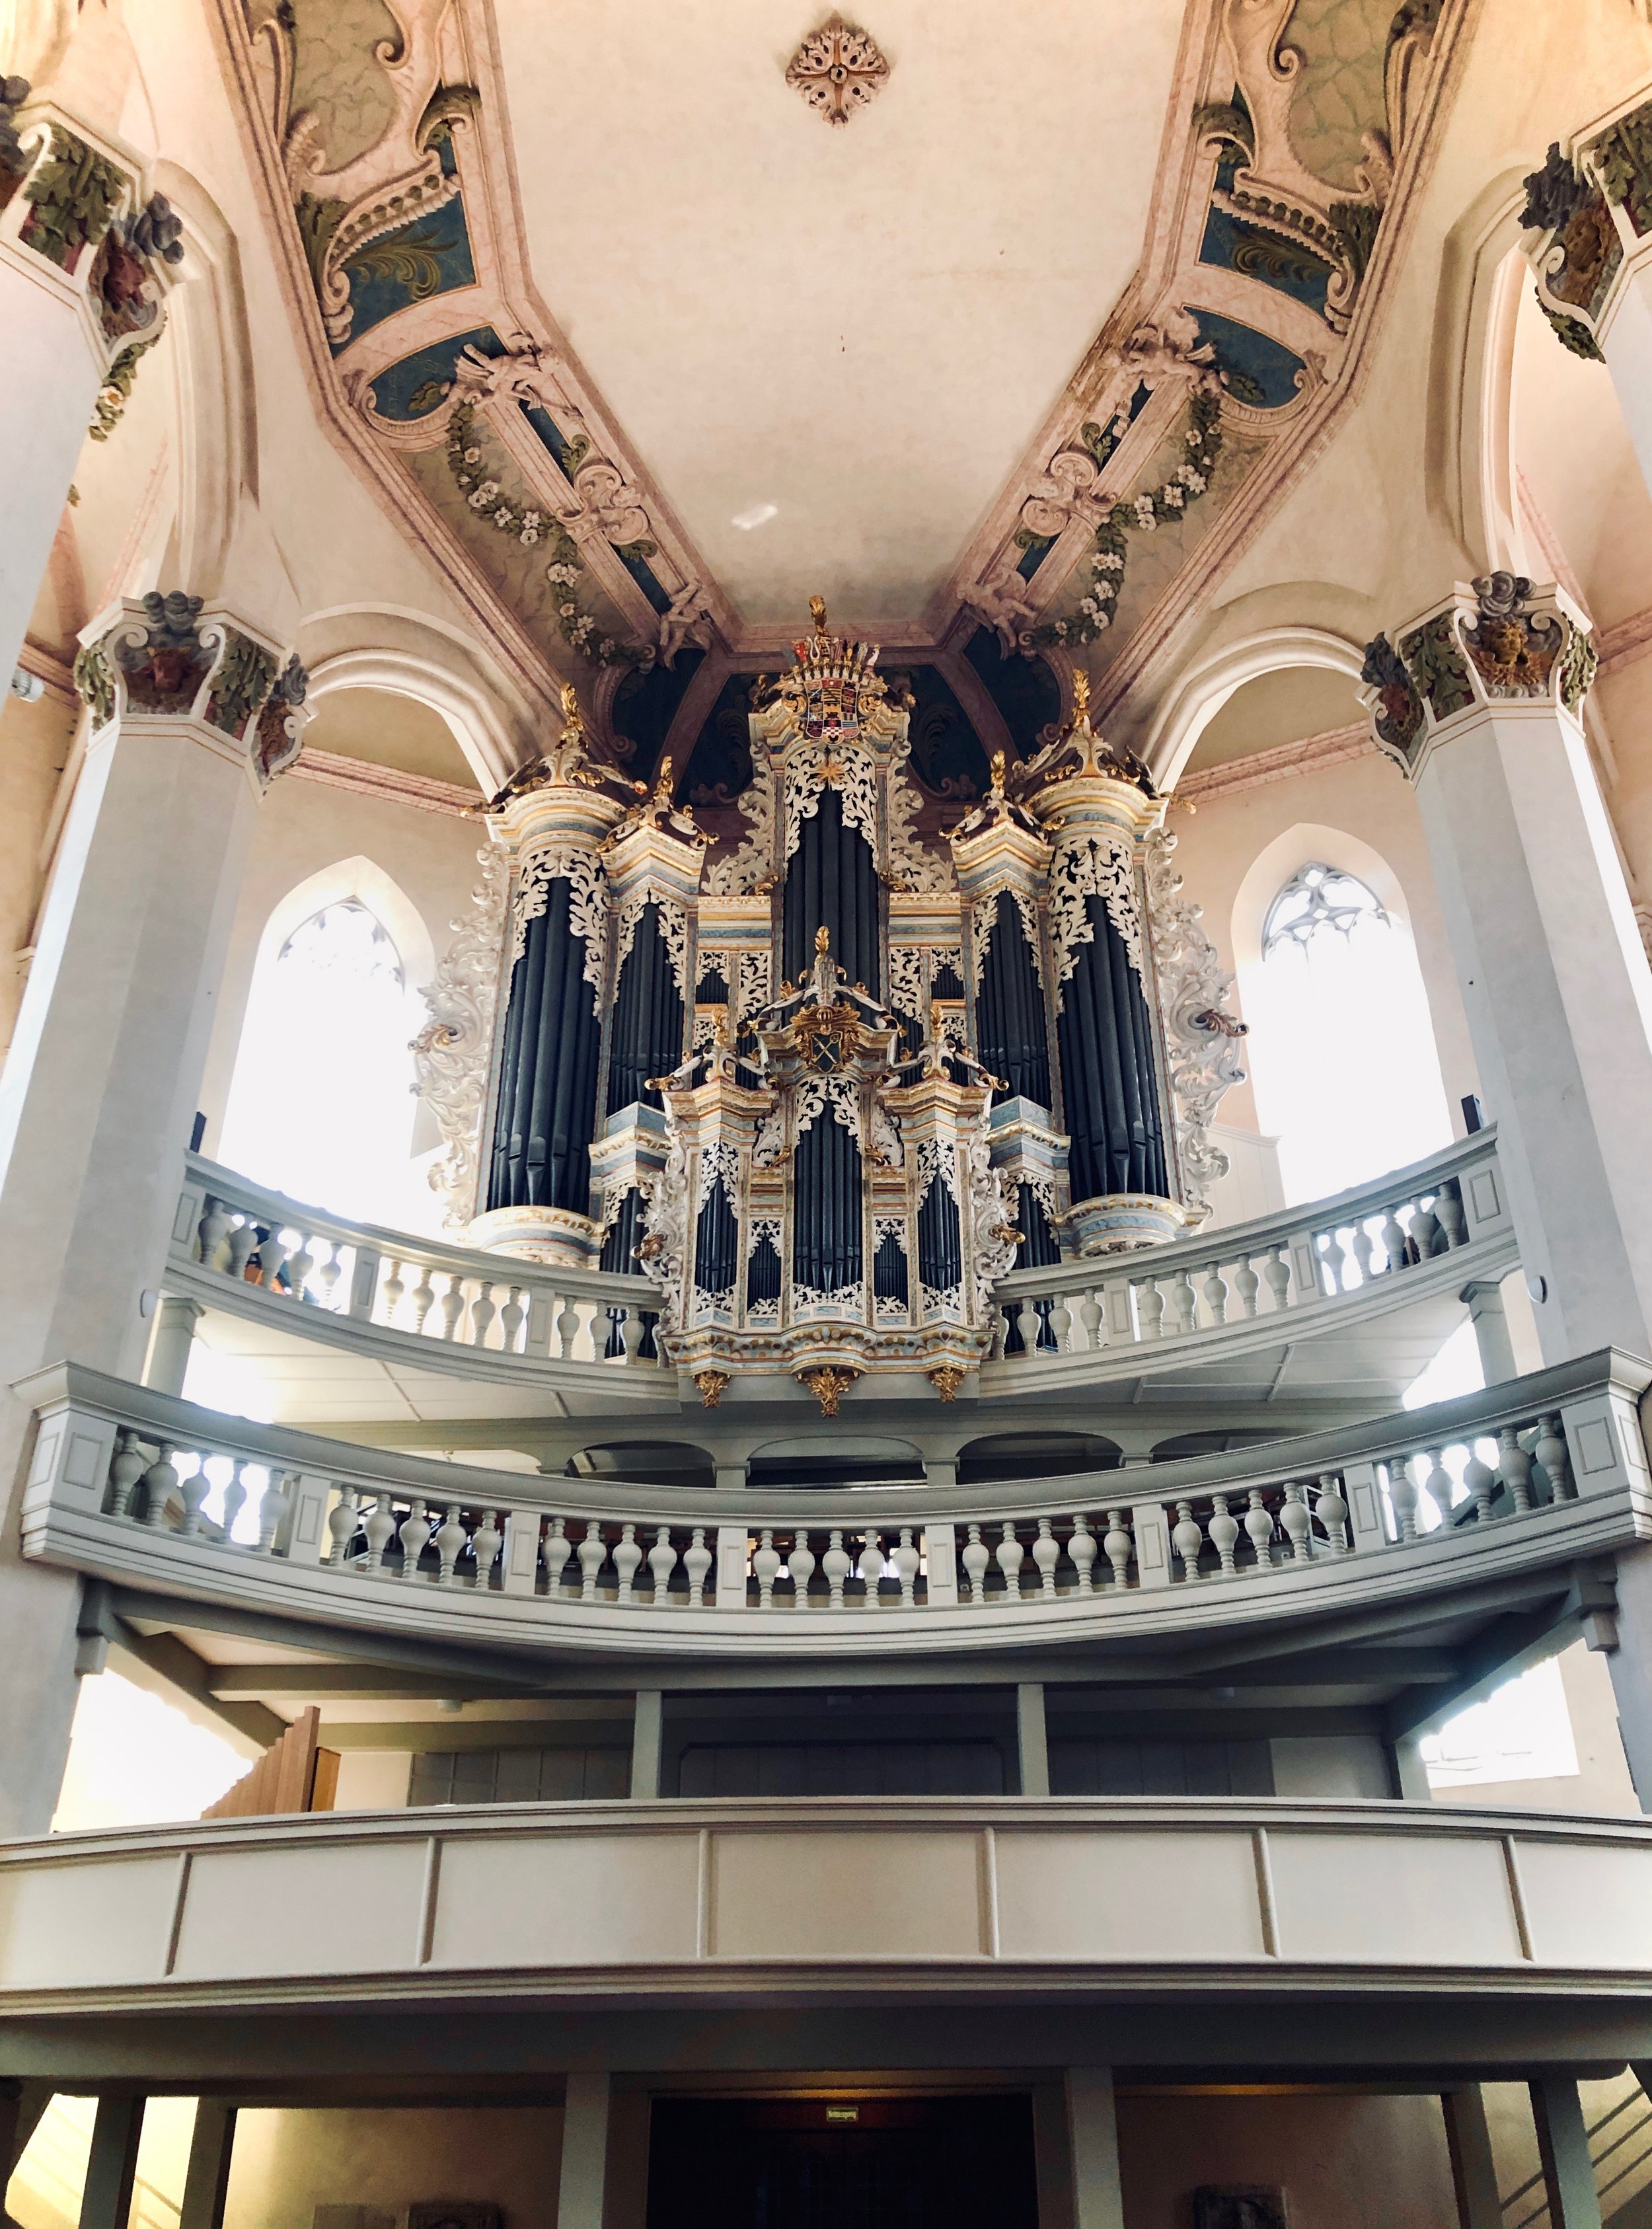  1746 Hildebrandt Organ, Stadtkirche St. Wenzel, Naumburg. 